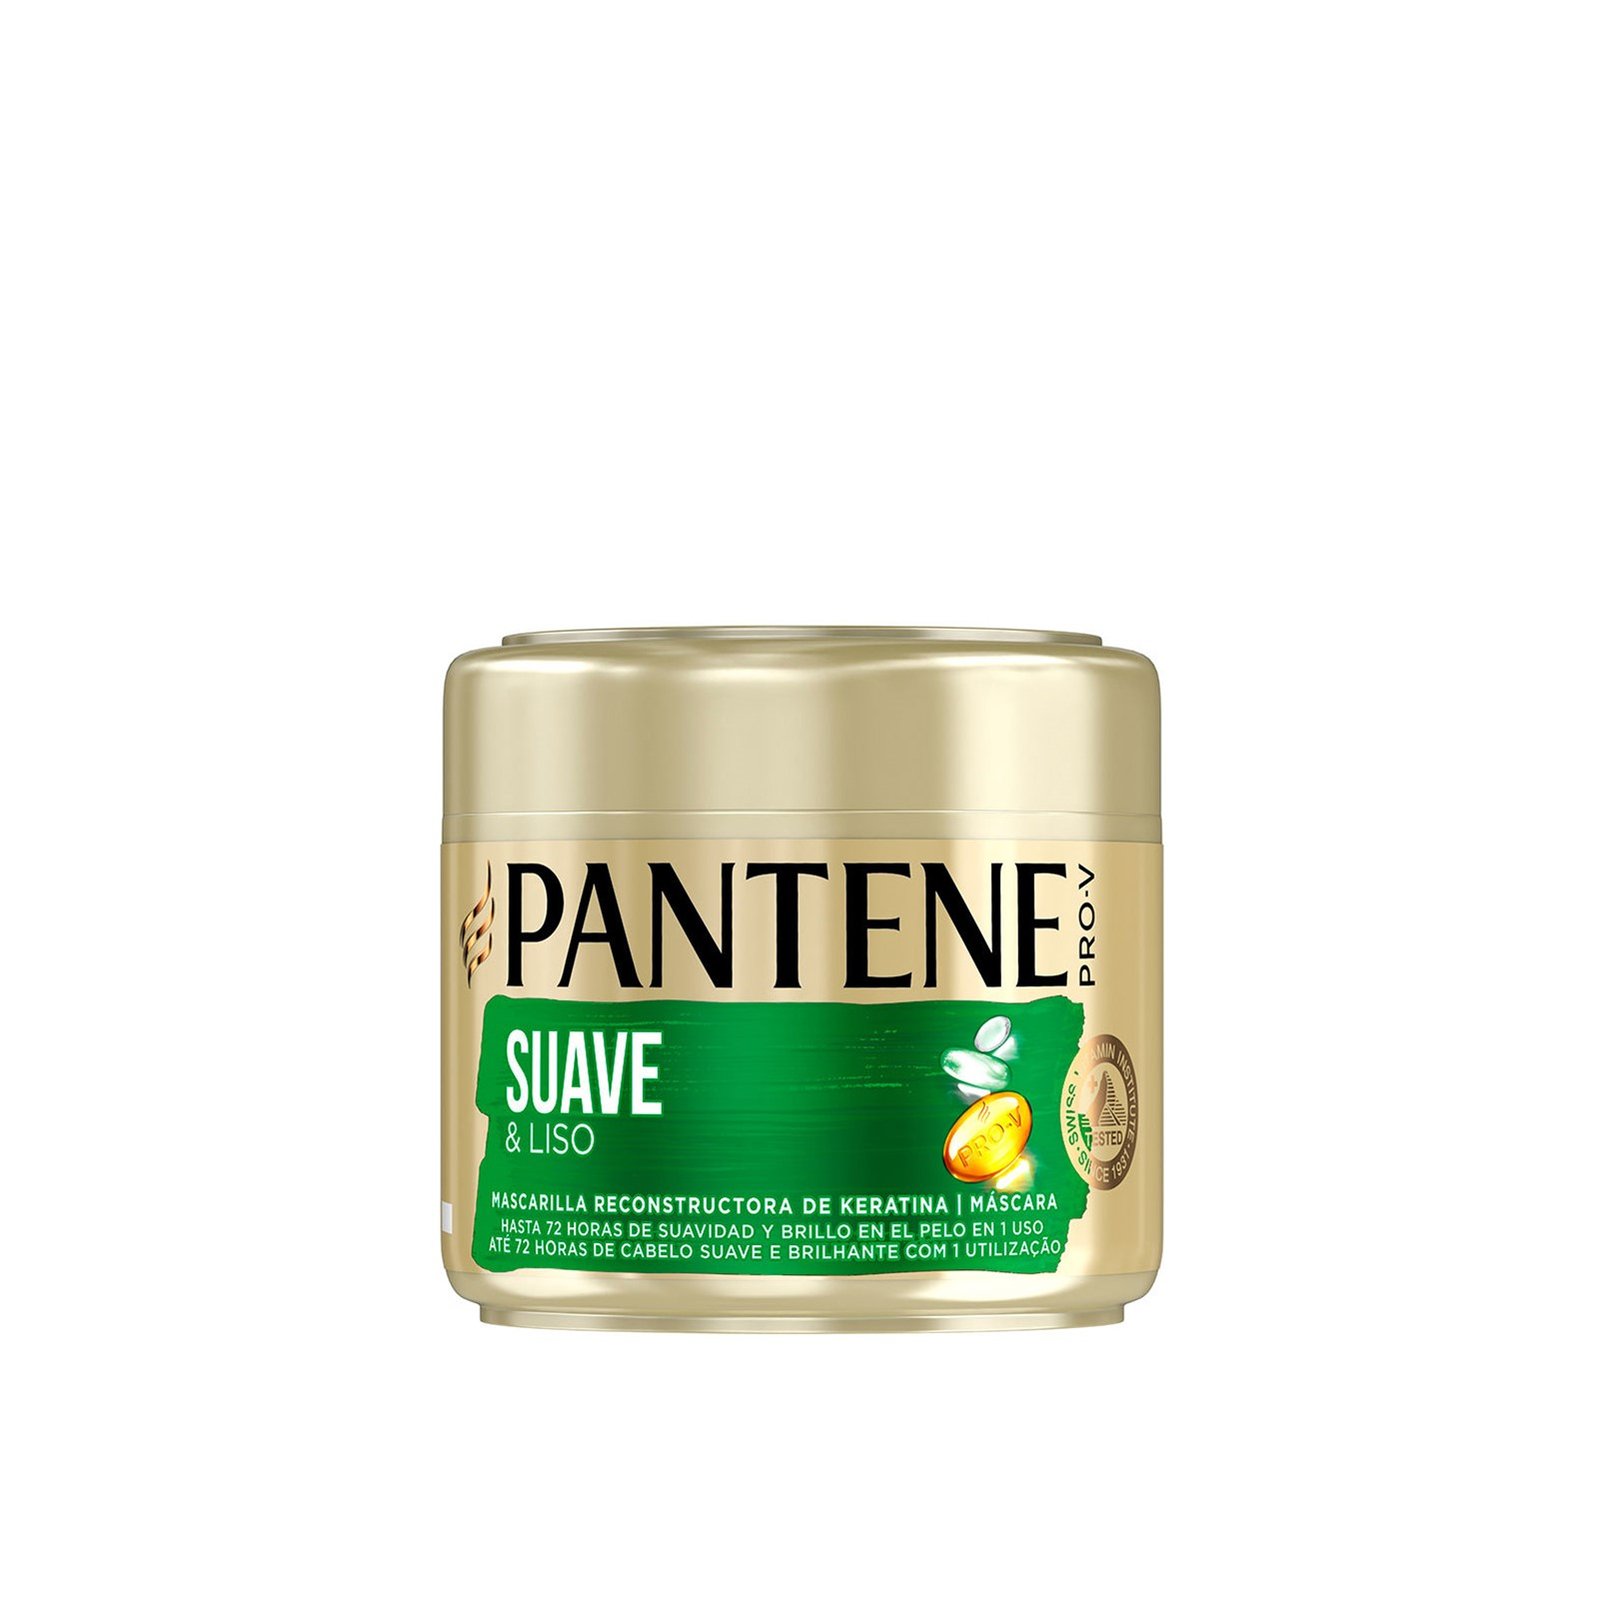 Pantene Pro-V Smooth & Sleek Hair Mask 300ml (10.14 fl oz)